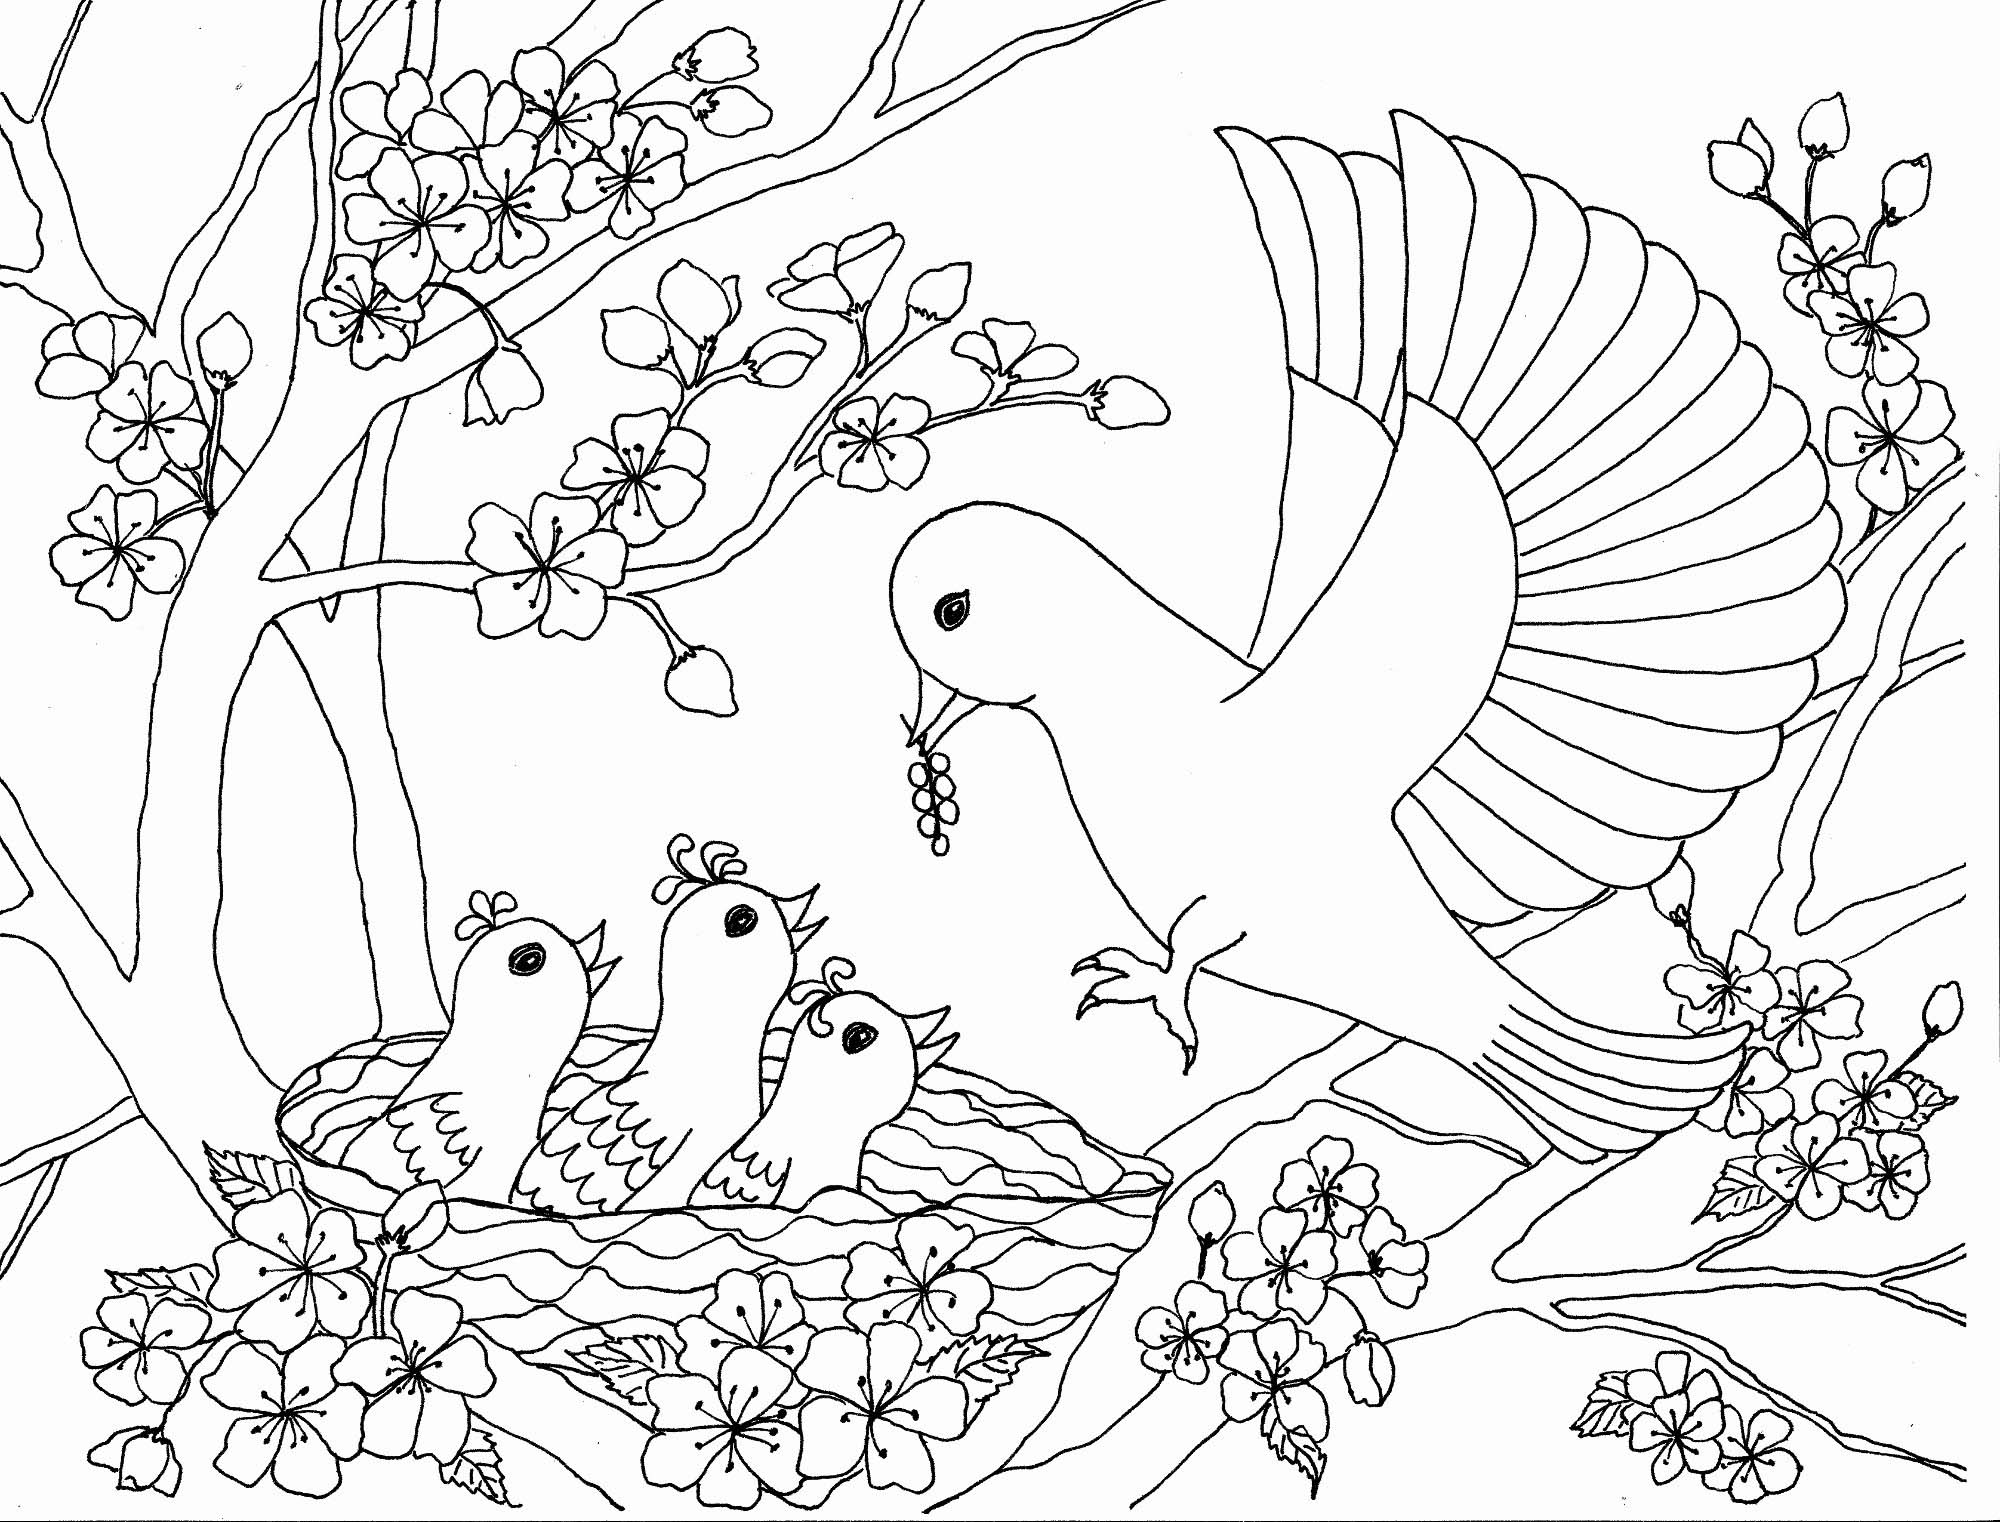 Tổng hợp các bức tranh tô màu con chim cho bé